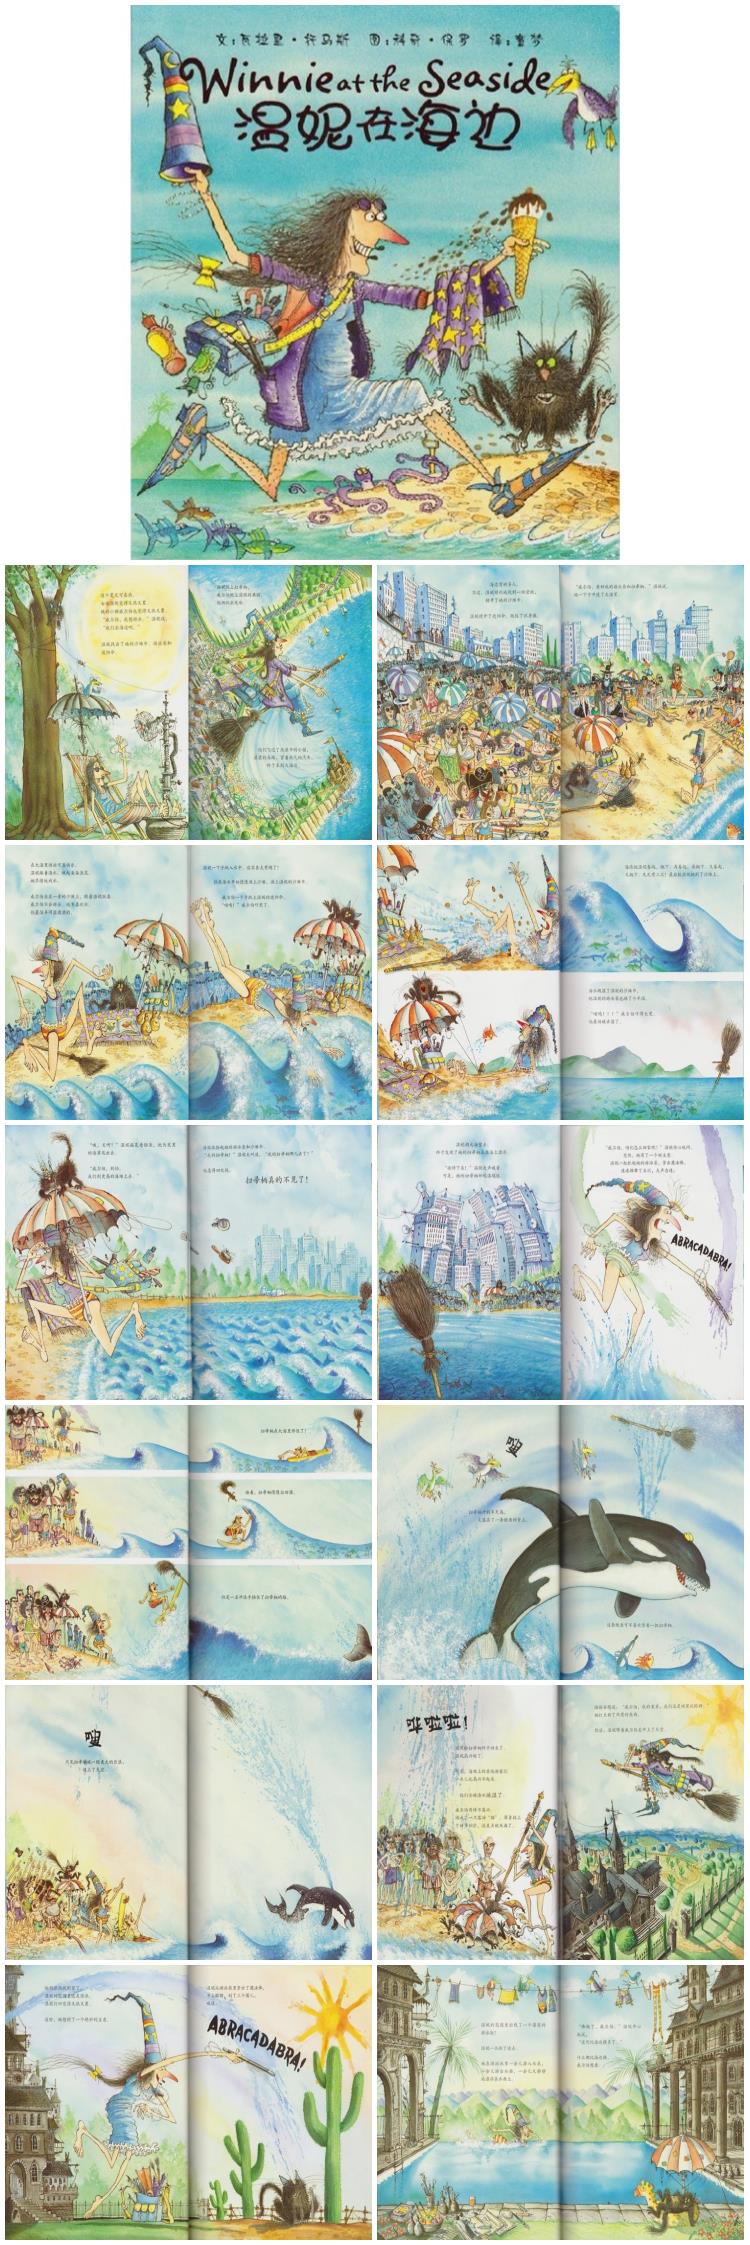 《温妮在海边》童话绘本故事PPT